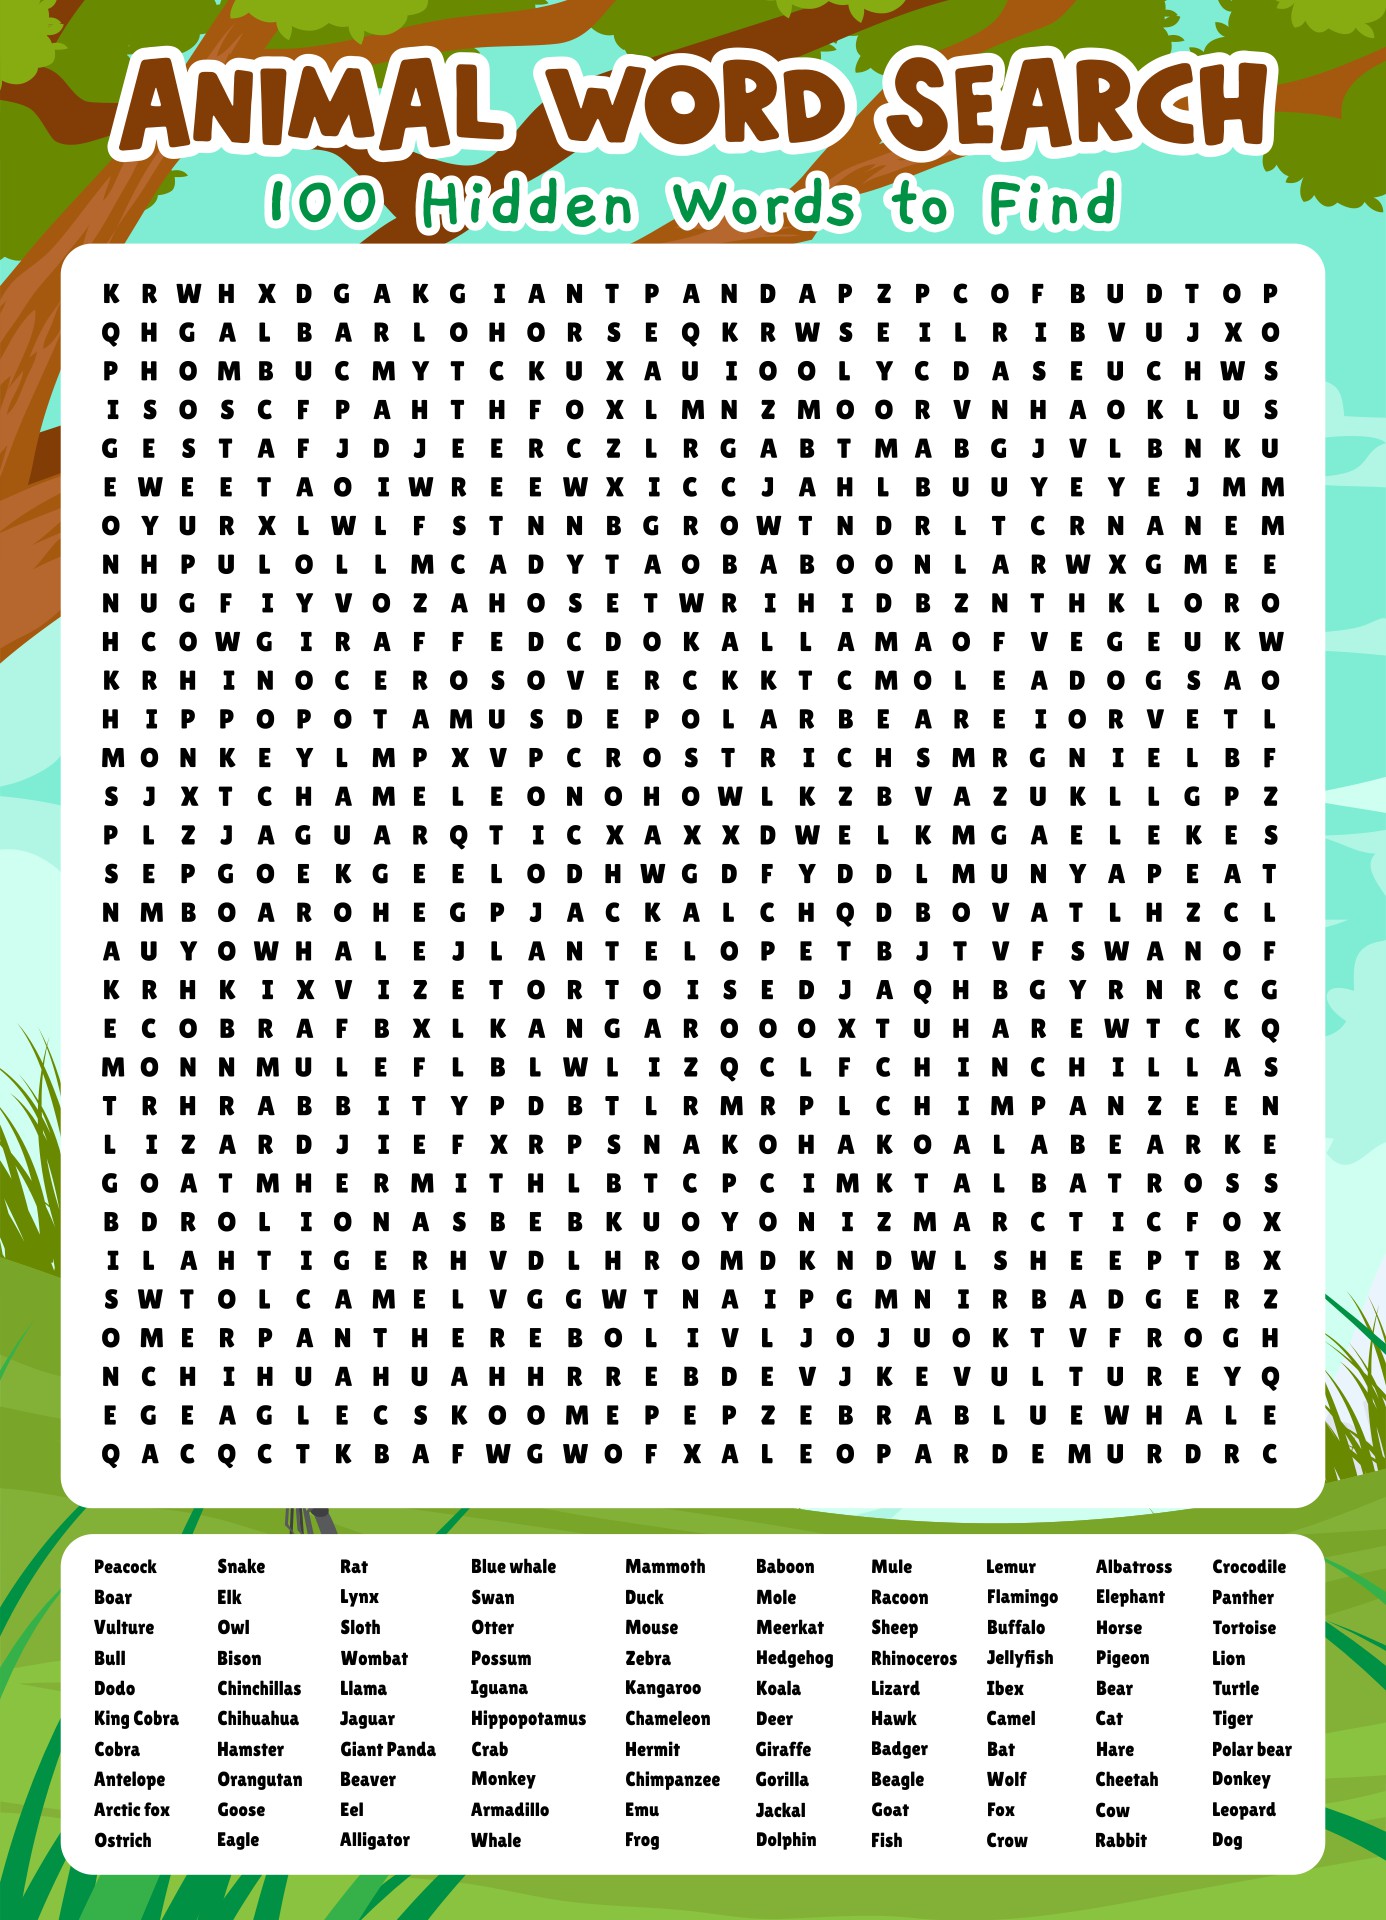 100 Animal Word Search Printable